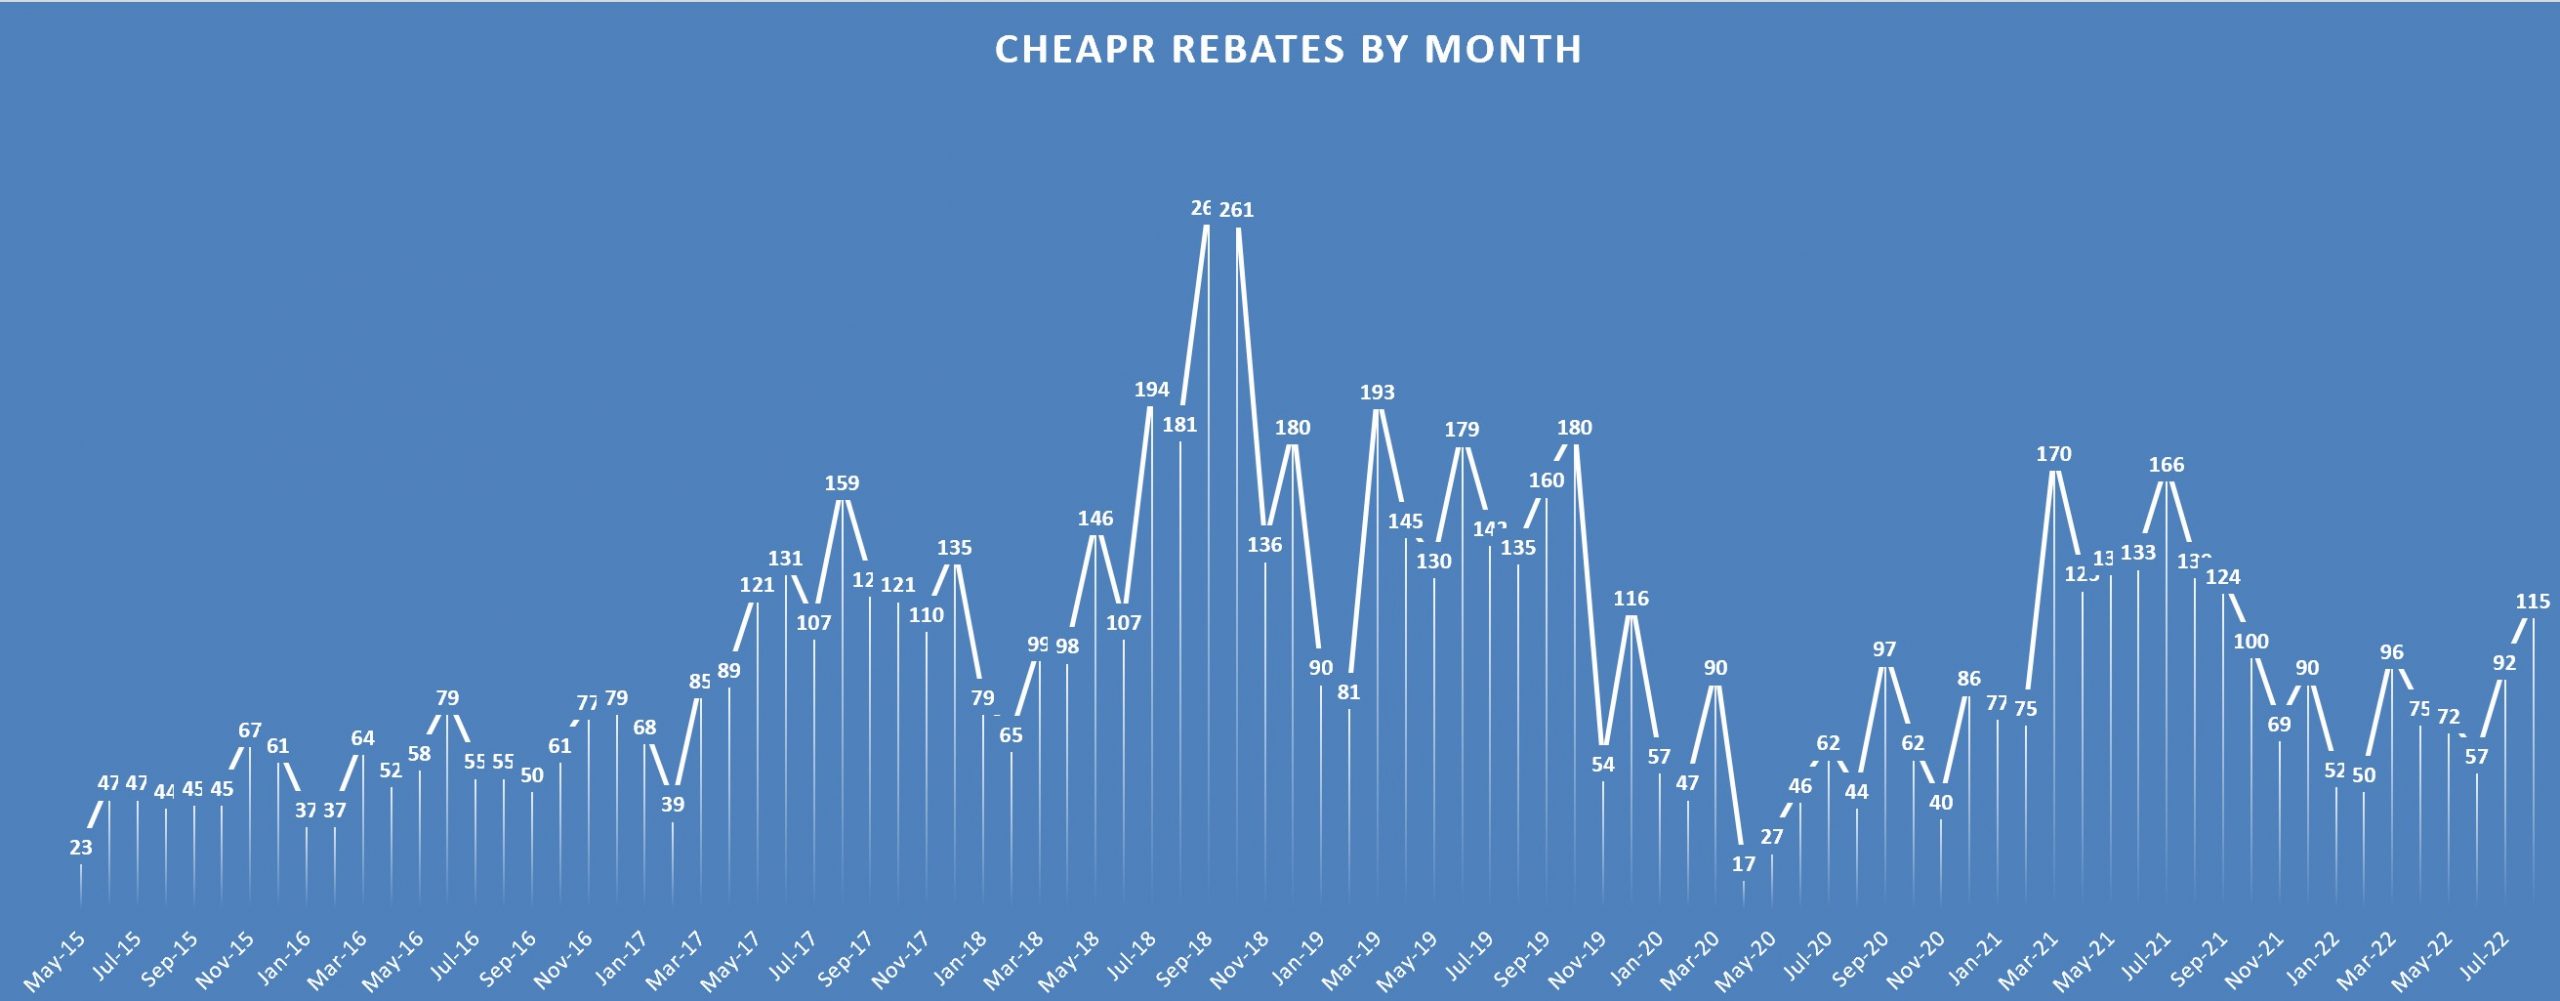 CHEAPR rebates through August 2022